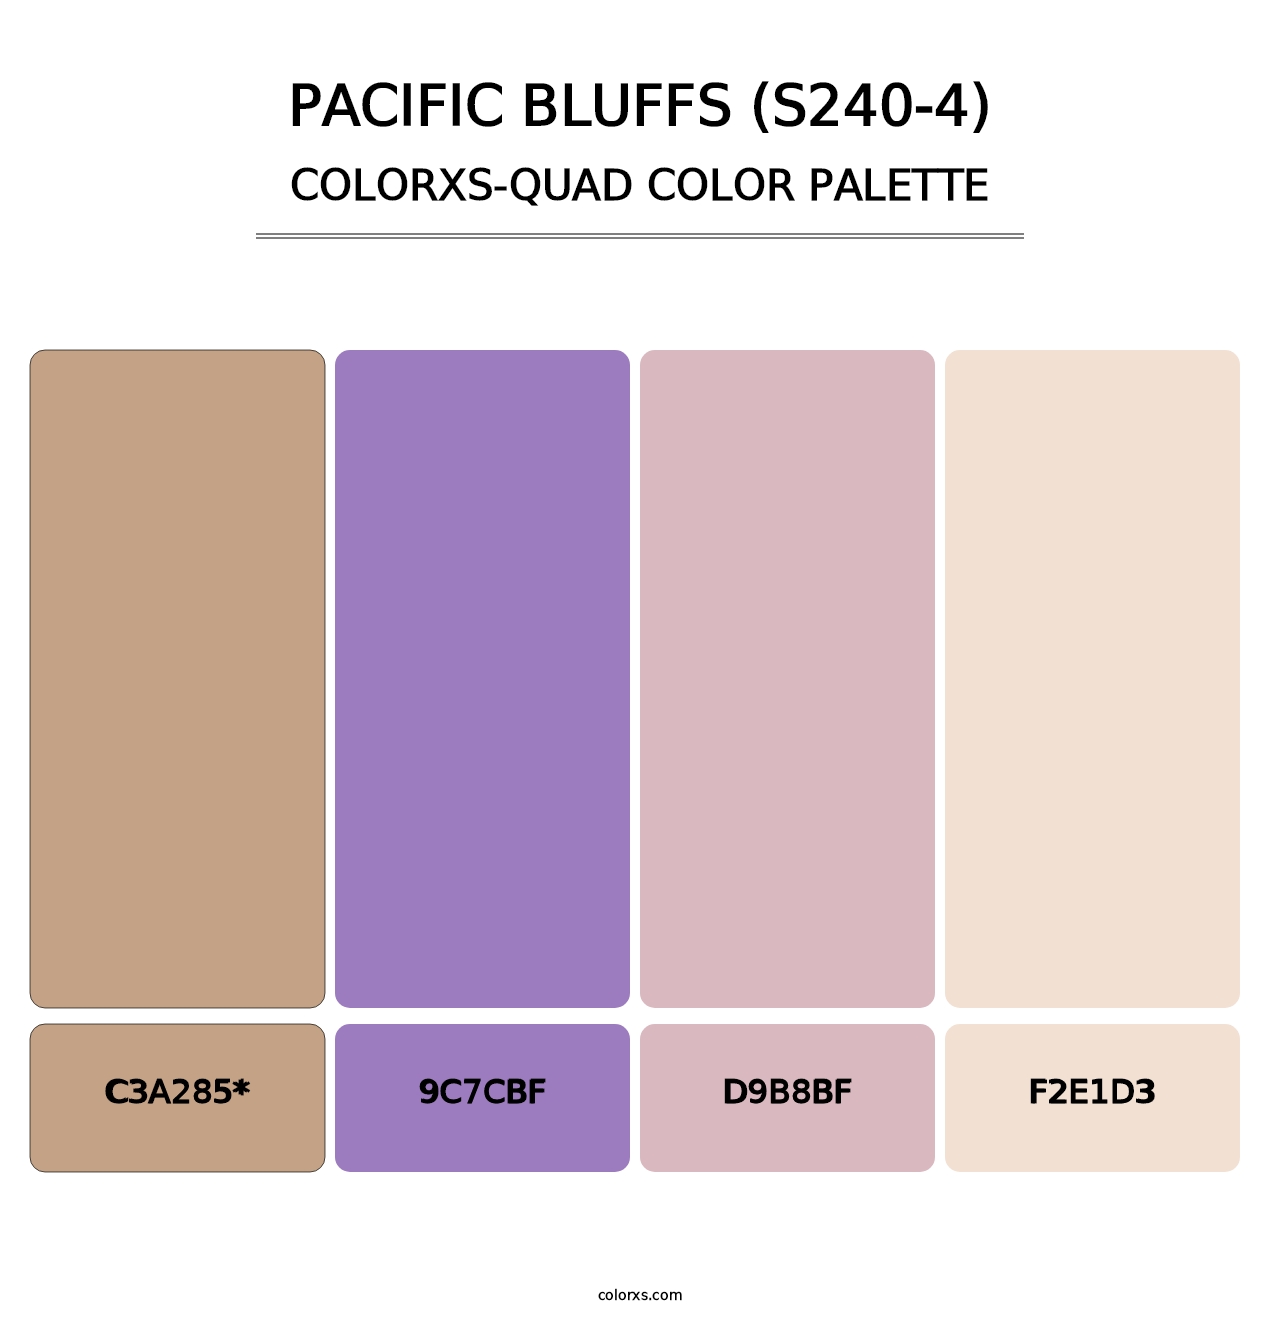 Pacific Bluffs (S240-4) - Colorxs Quad Palette